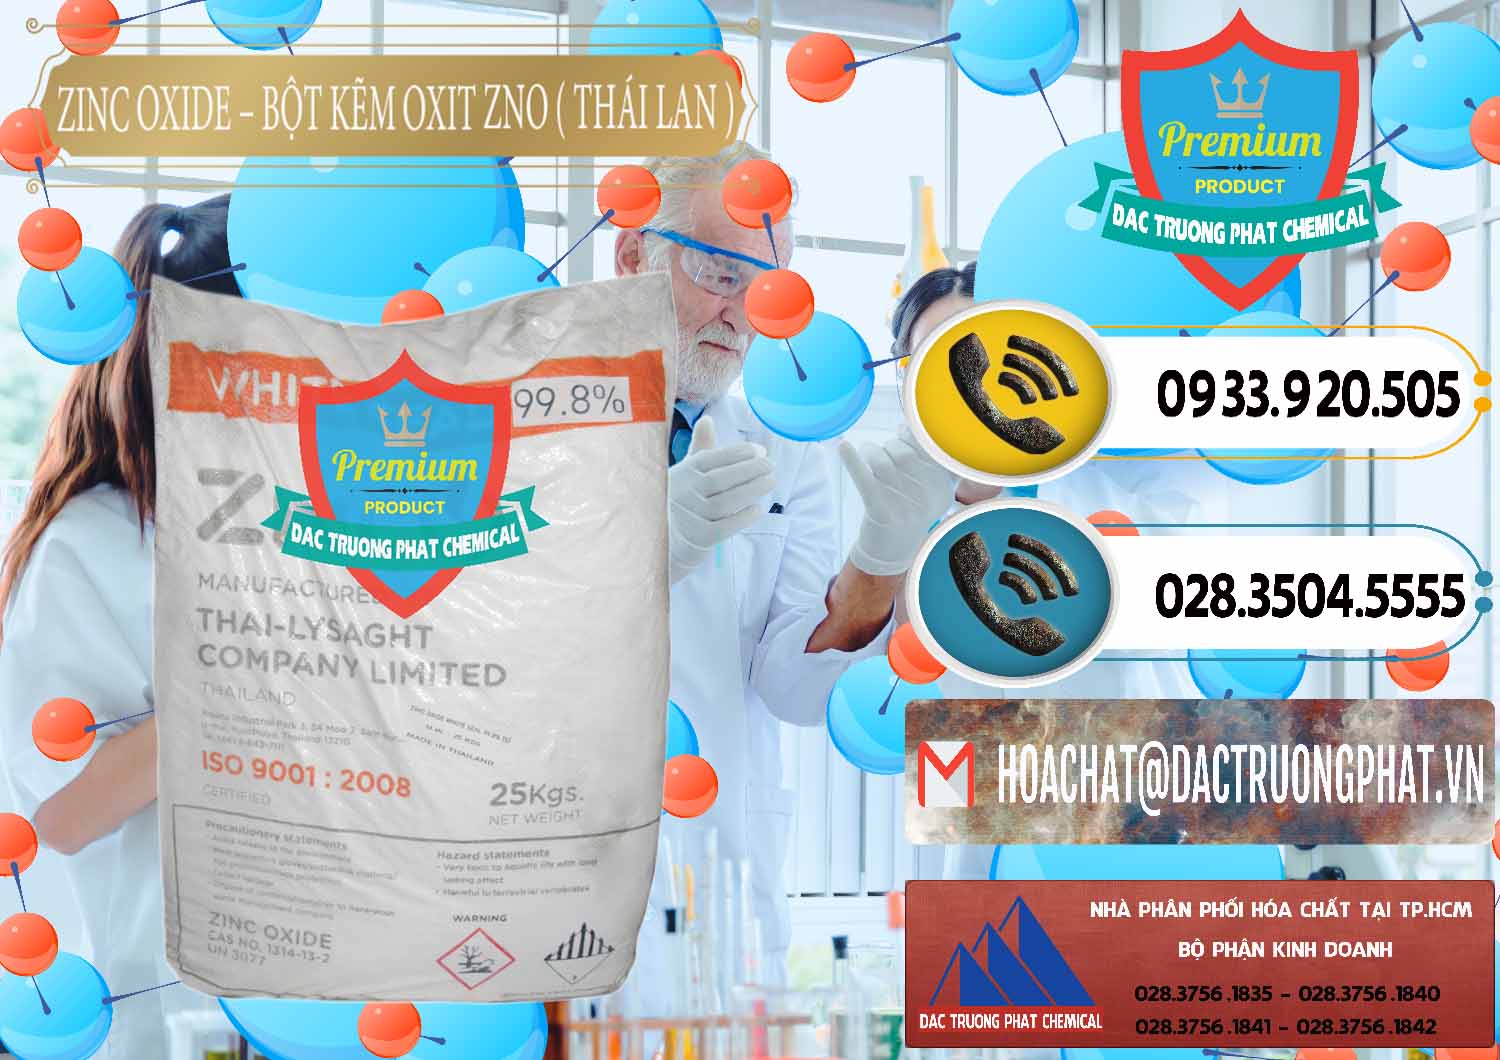 Cty chuyên bán ( phân phối ) Zinc Oxide - Bột Kẽm Oxit ZNO Thái Lan Thailand - 0181 - Nơi chuyên phân phối & kinh doanh hóa chất tại TP.HCM - hoachatdetnhuom.vn